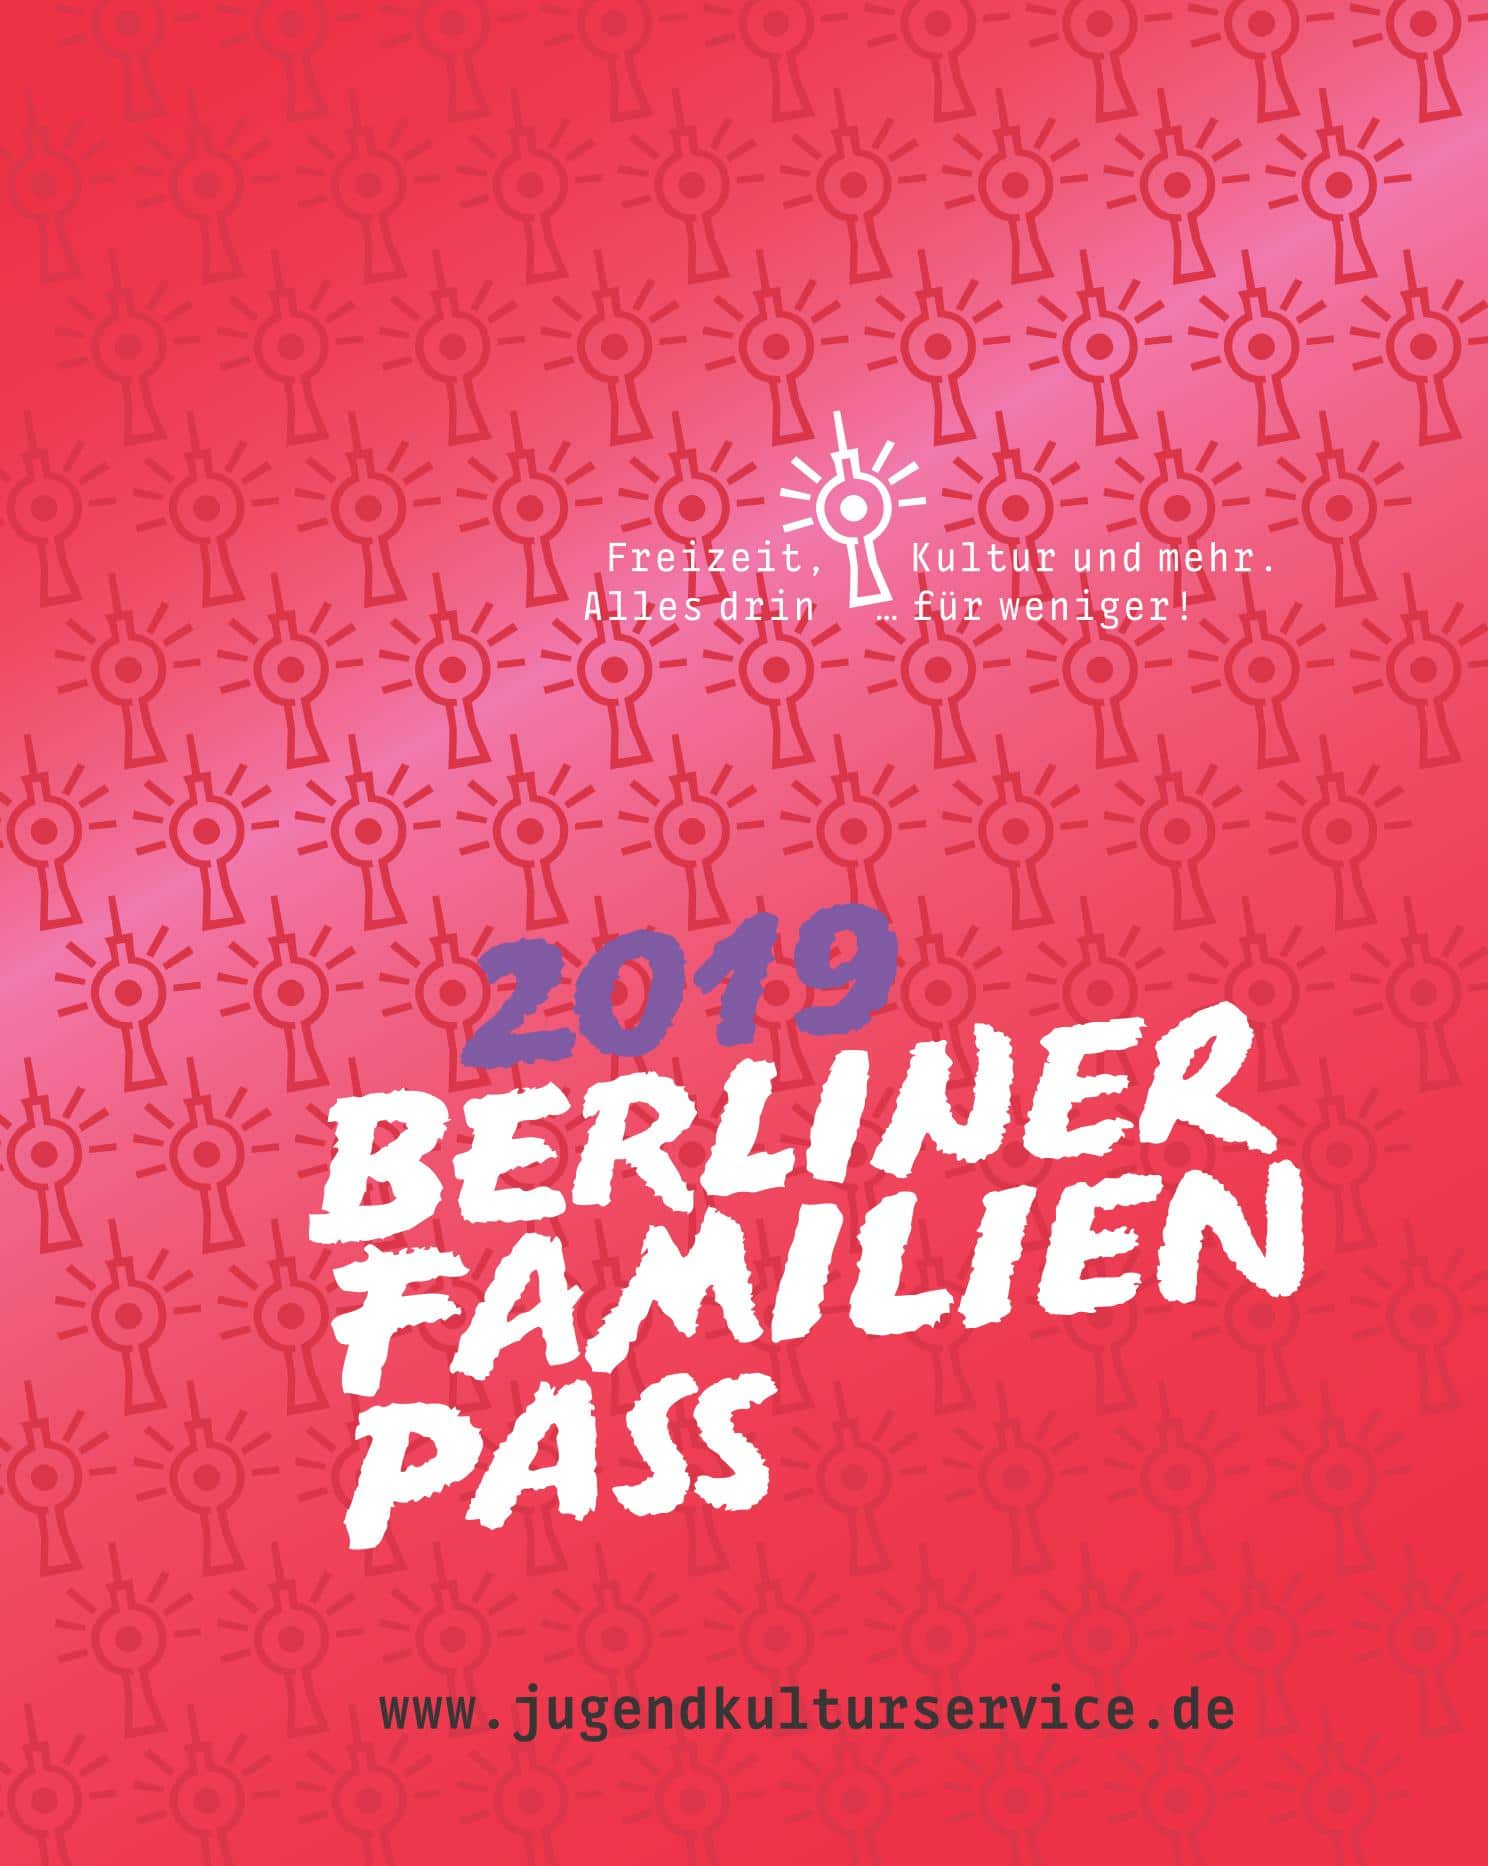 Der Berliner FamilienPasses 2019 StadtrandNachrichten